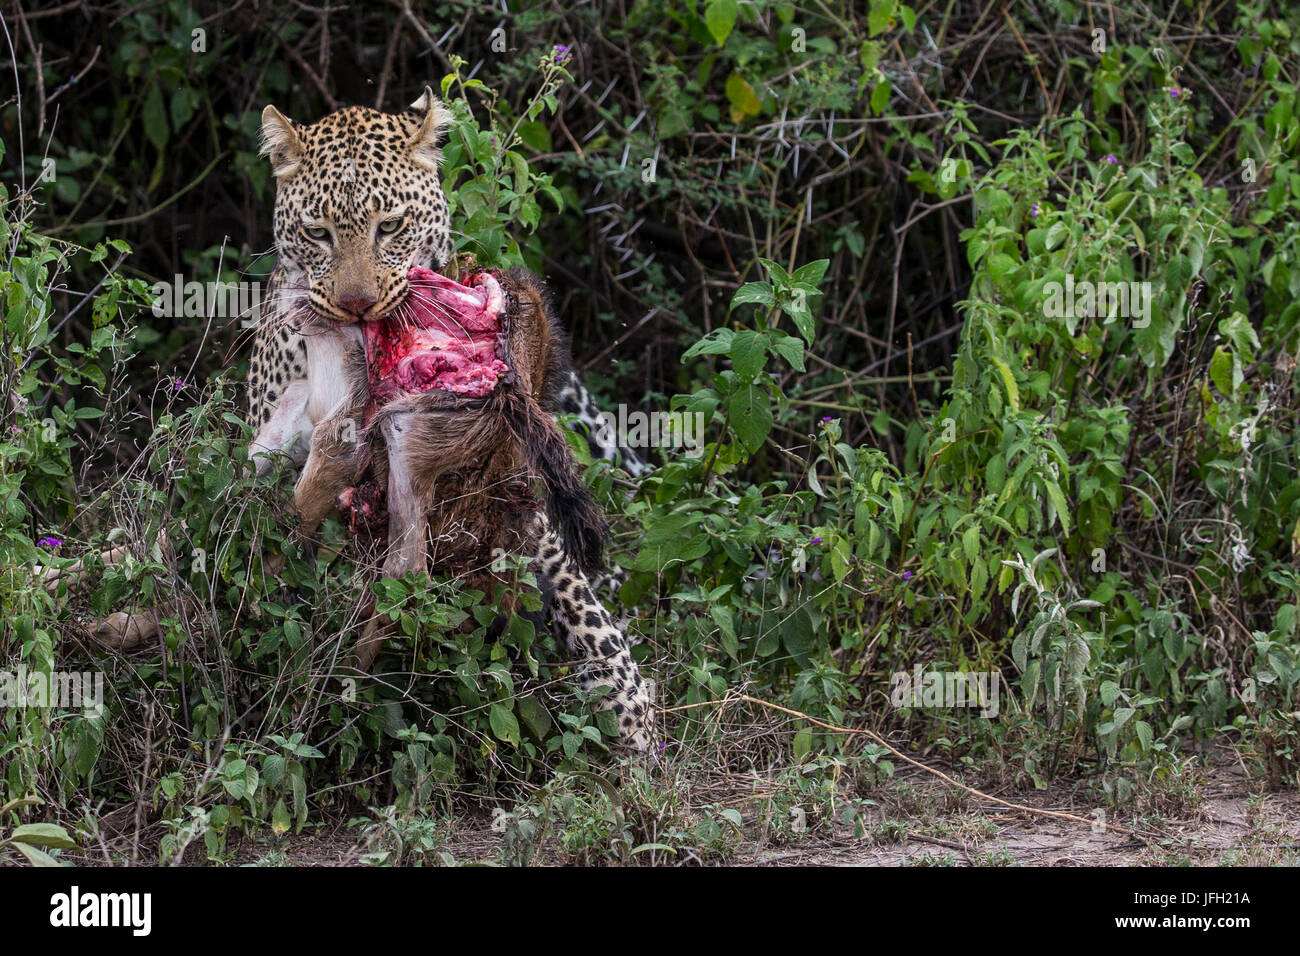 Tanzania, Ndutu area, leopard with gnu's fissure Stock Photo